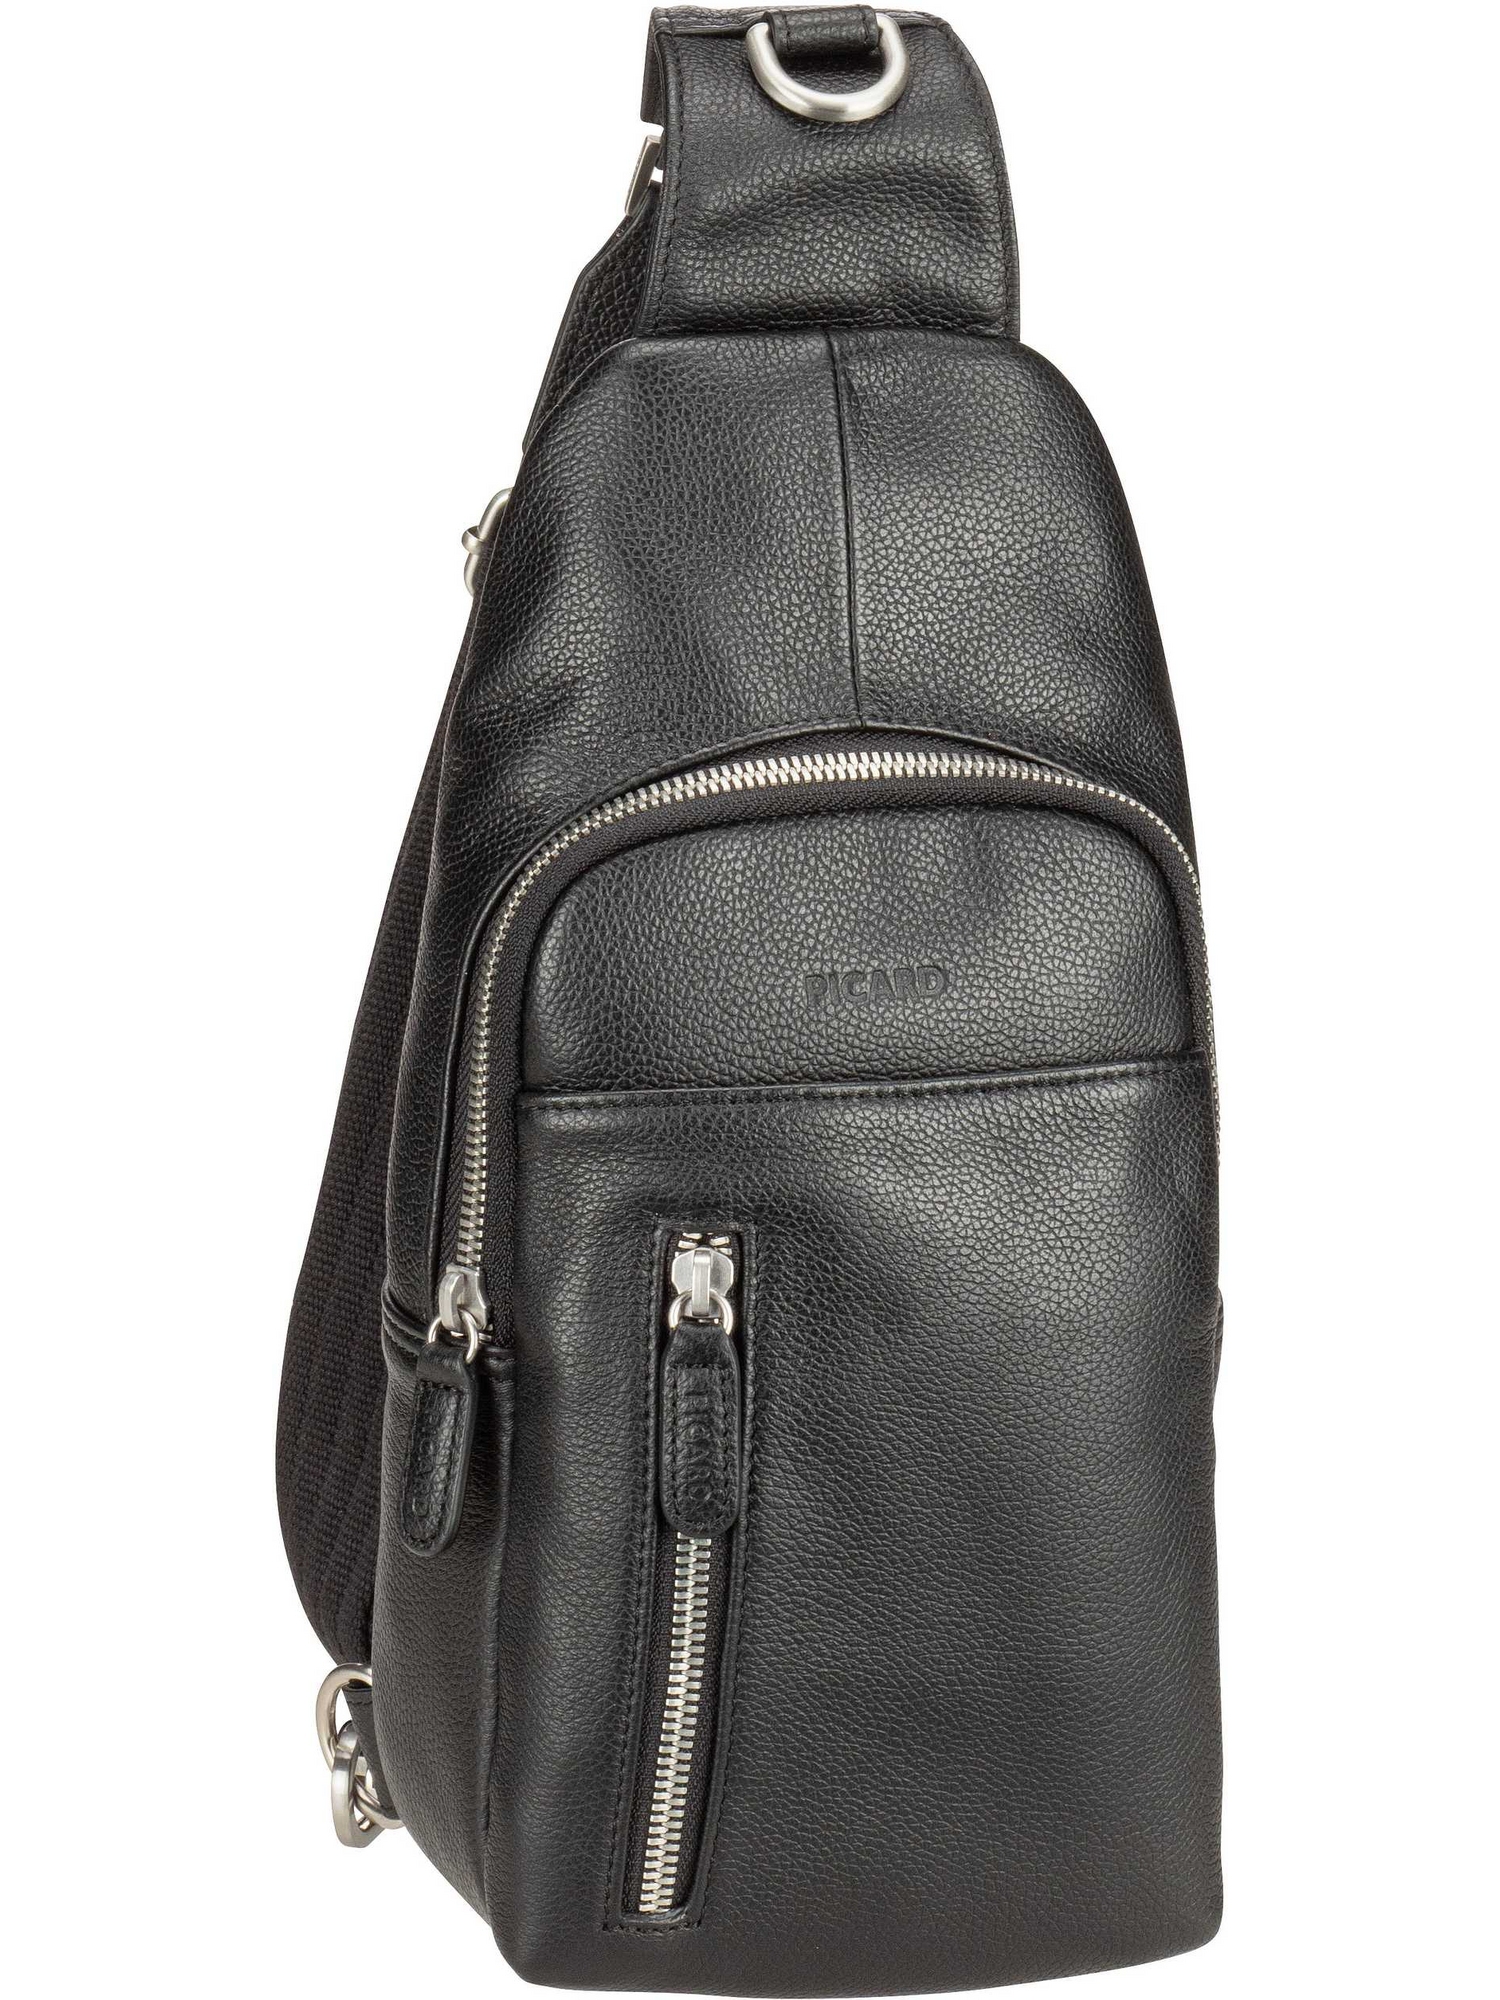 Рюкзак PICARD Sling Bag Milano 7972, черный